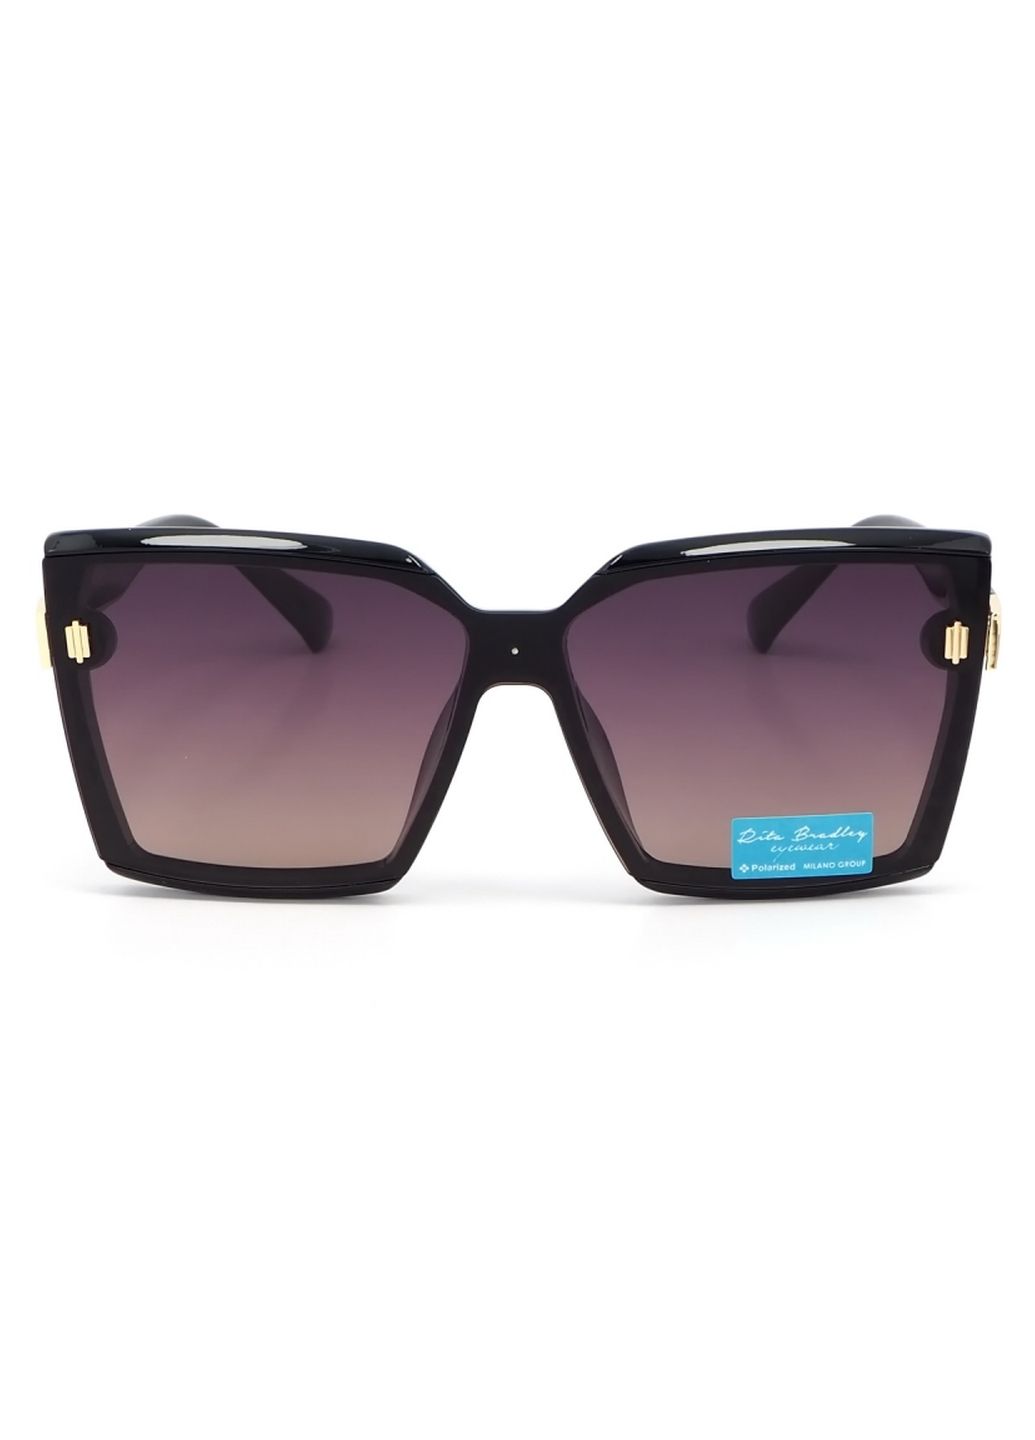 Купить Женские солнцезащитные очки Rita Bradley с поляризацией RB723 112038 в интернет-магазине